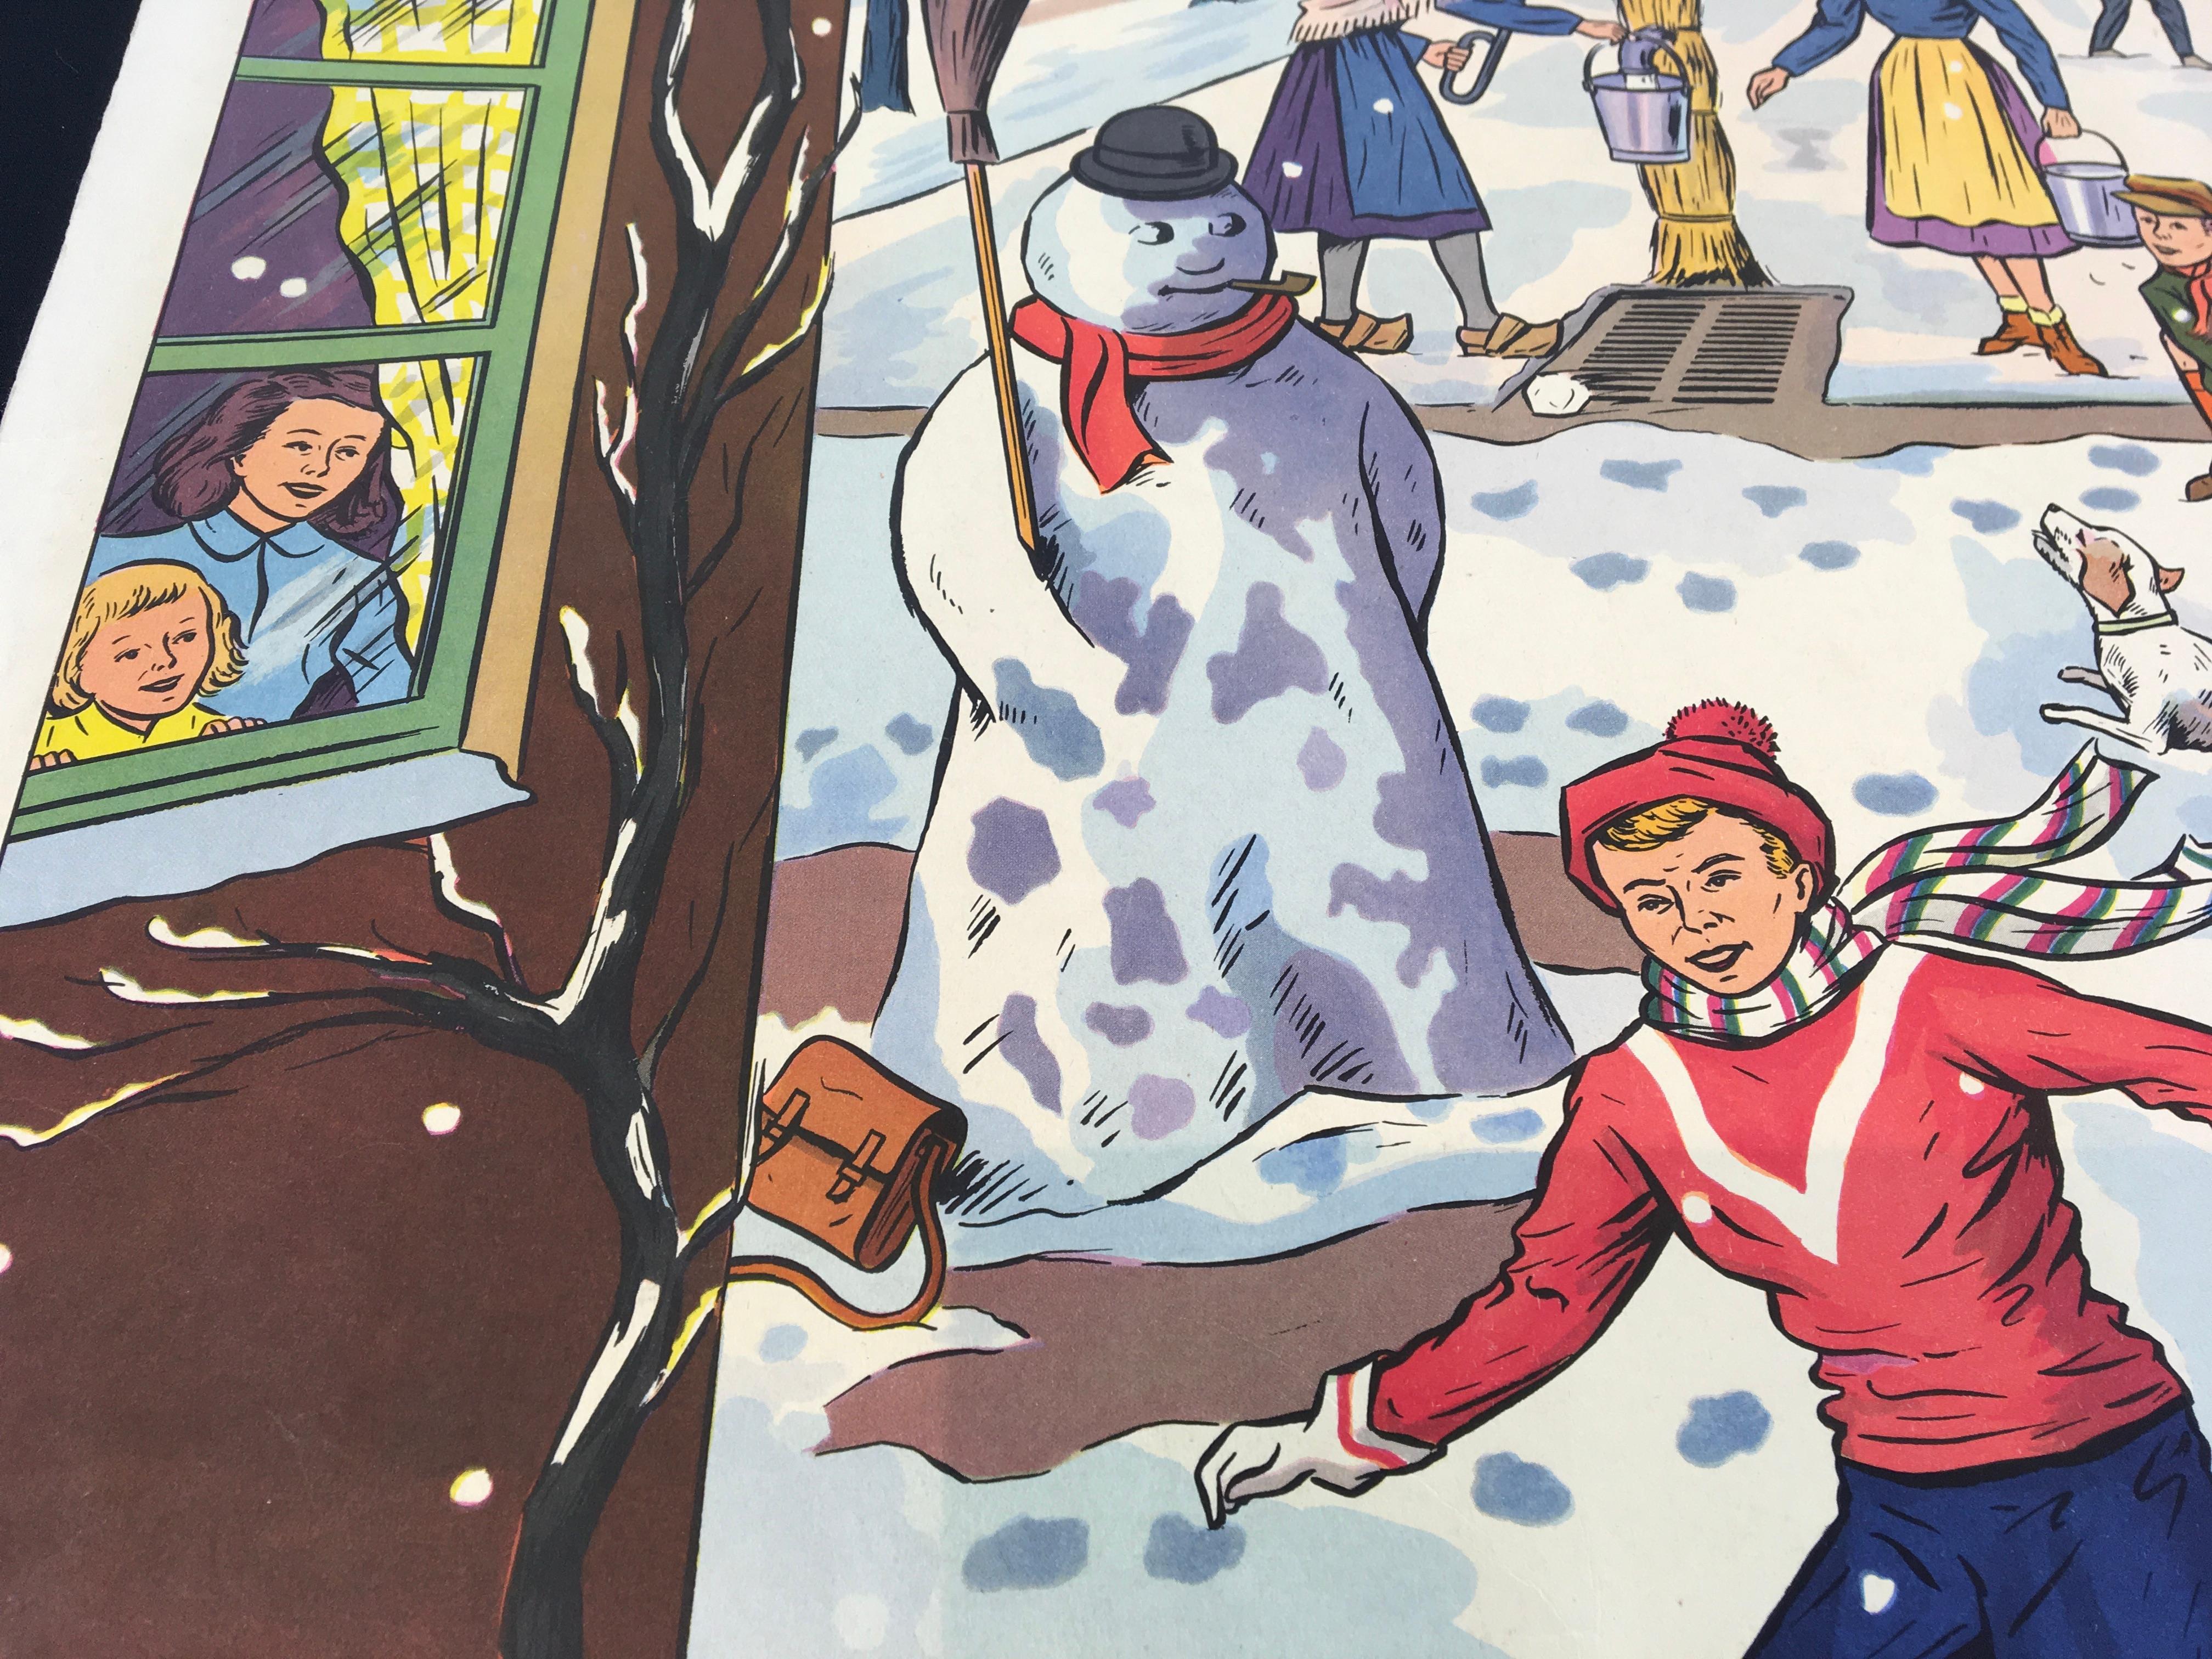 Vintage Schulplakat - Schulkarte beim Spielen im Schnee - Schneespaß im Dorf. Ein schönes Schulposter mit tollen Farben und Details von Rossignol Frankreich.  Das Dorf ist schneebedeckt, und die Kinder spielen und vergnügen sich im Schnee, bauen